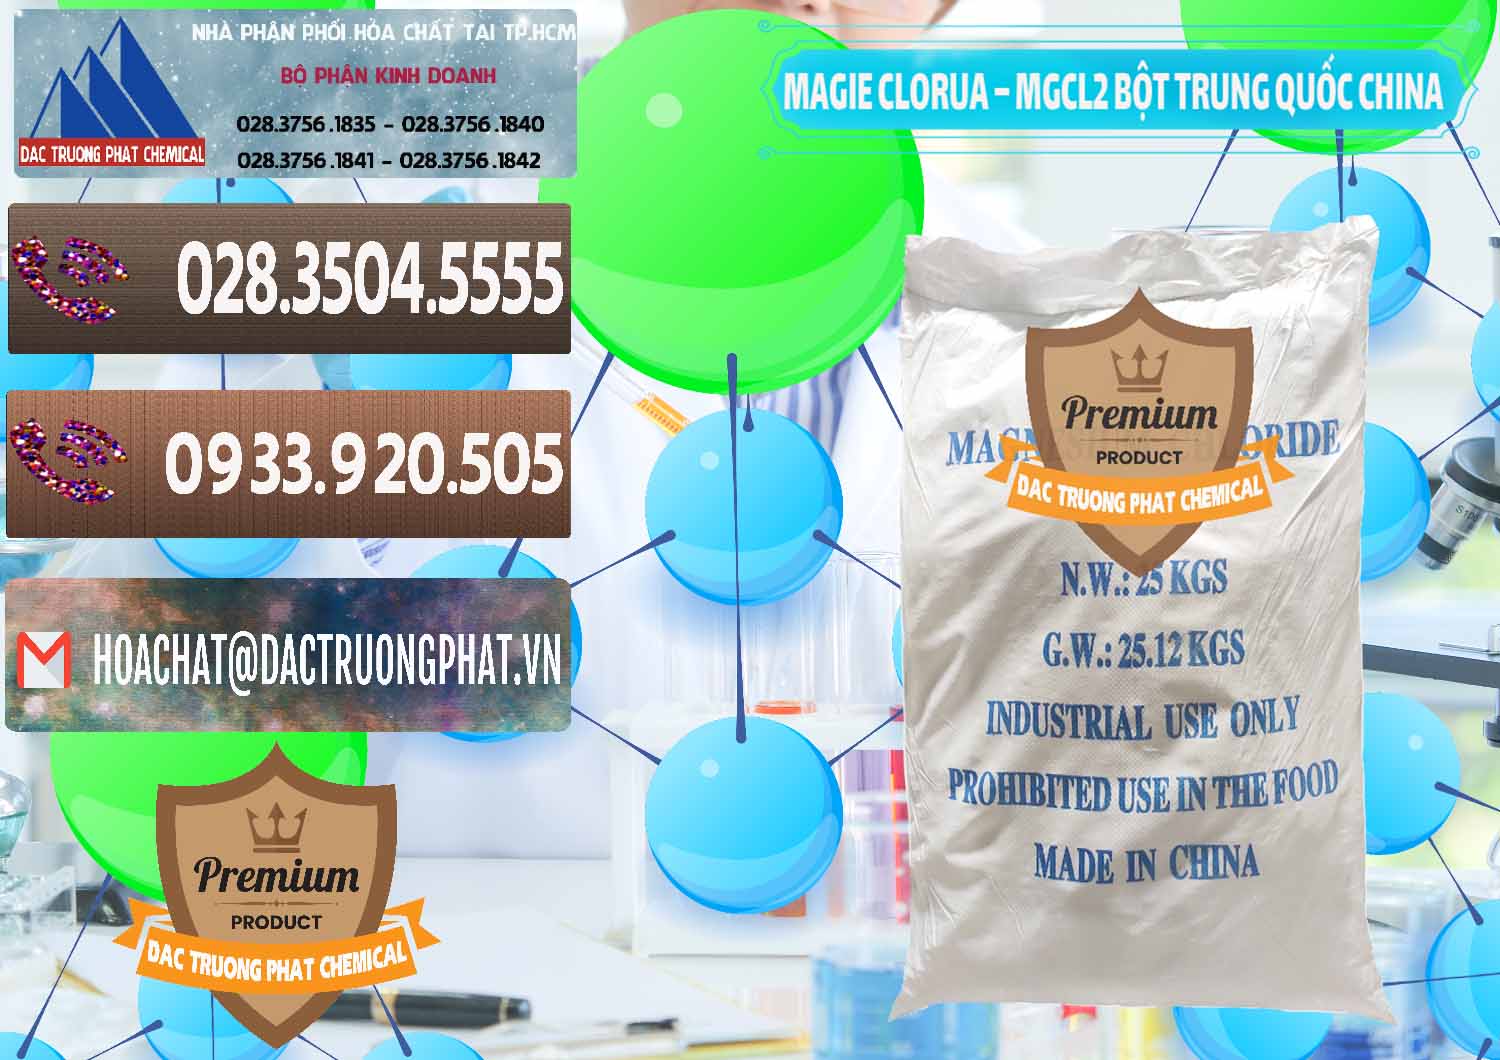 Nơi chuyên nhập khẩu & bán Magie Clorua – MGCL2 96% Dạng Bột Bao Chữ Xanh Trung Quốc China - 0207 - Công ty cung cấp và nhập khẩu hóa chất tại TP.HCM - hoachatviet.net